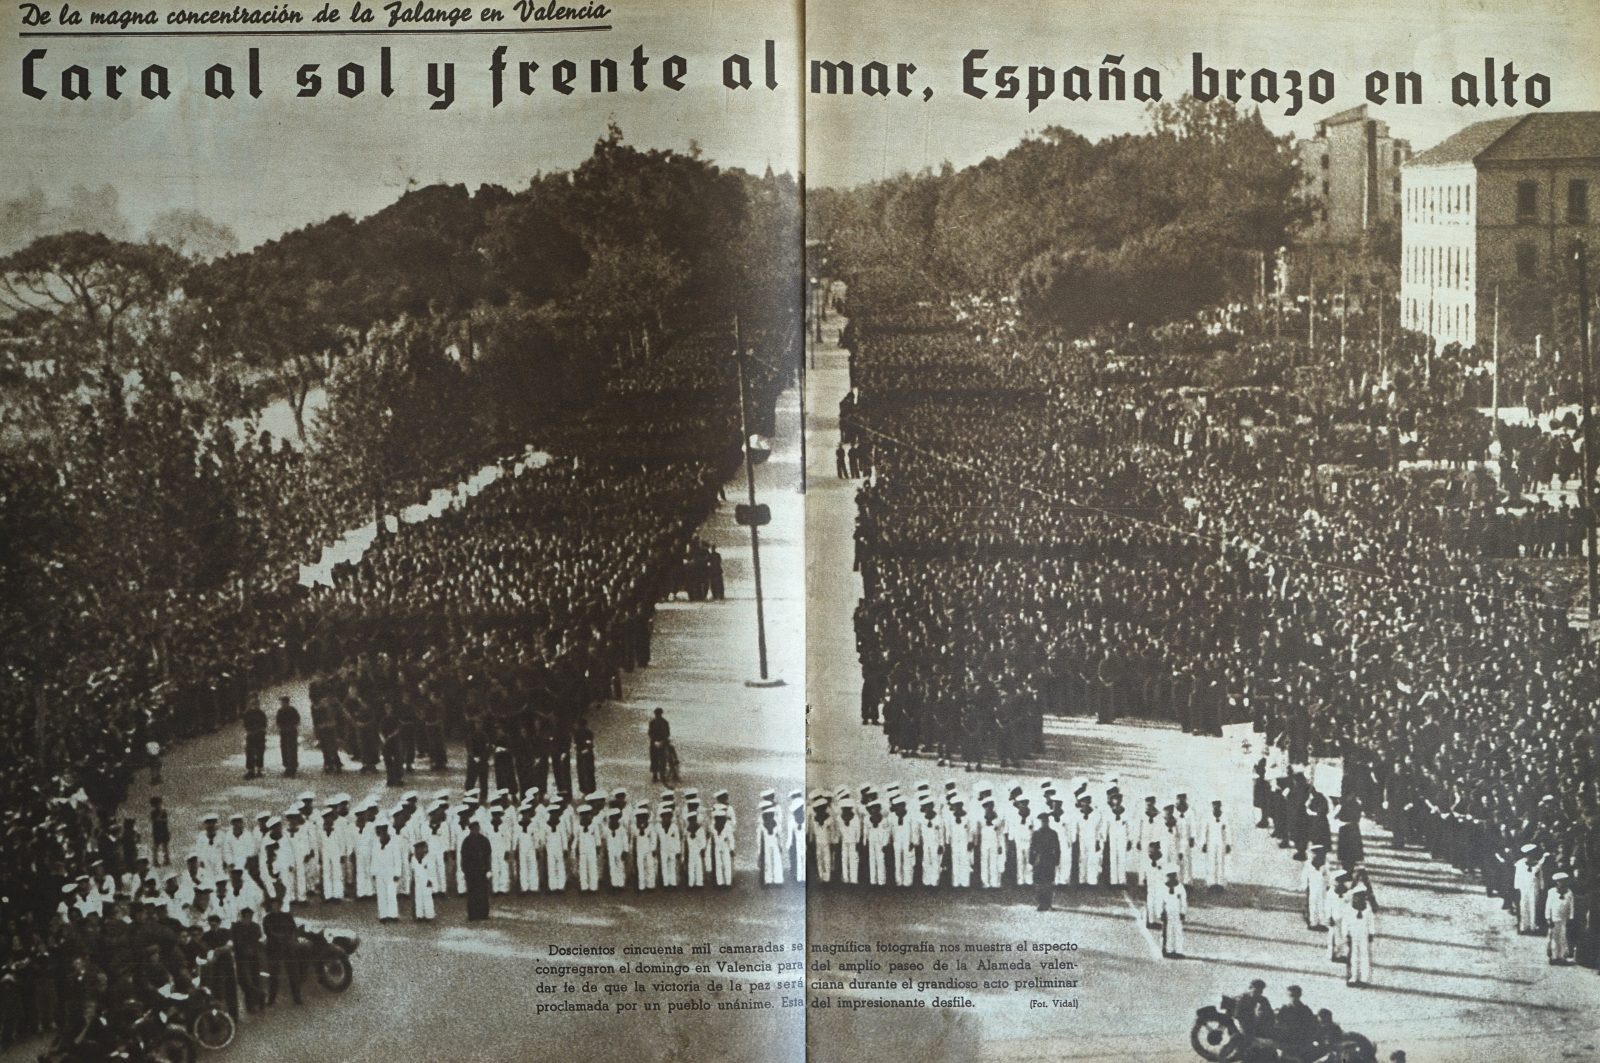 Concentració falangista 20/4/1940
Semanario Gráfico Fotos